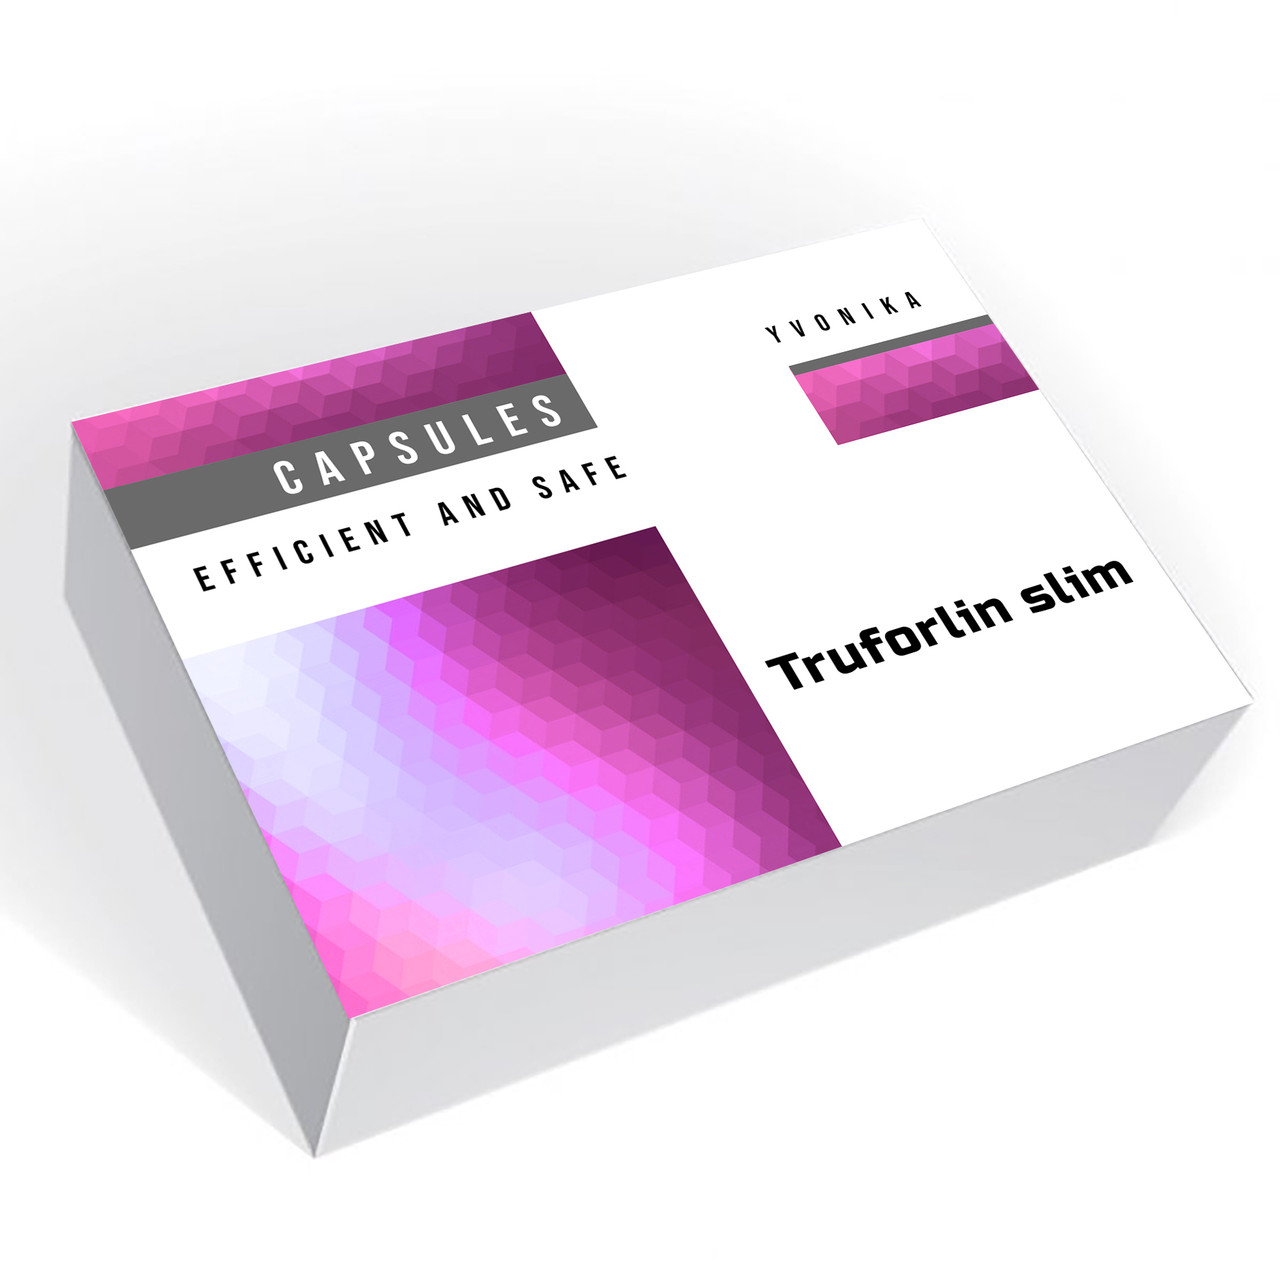 Truforlin slim (Труфорлин слім)